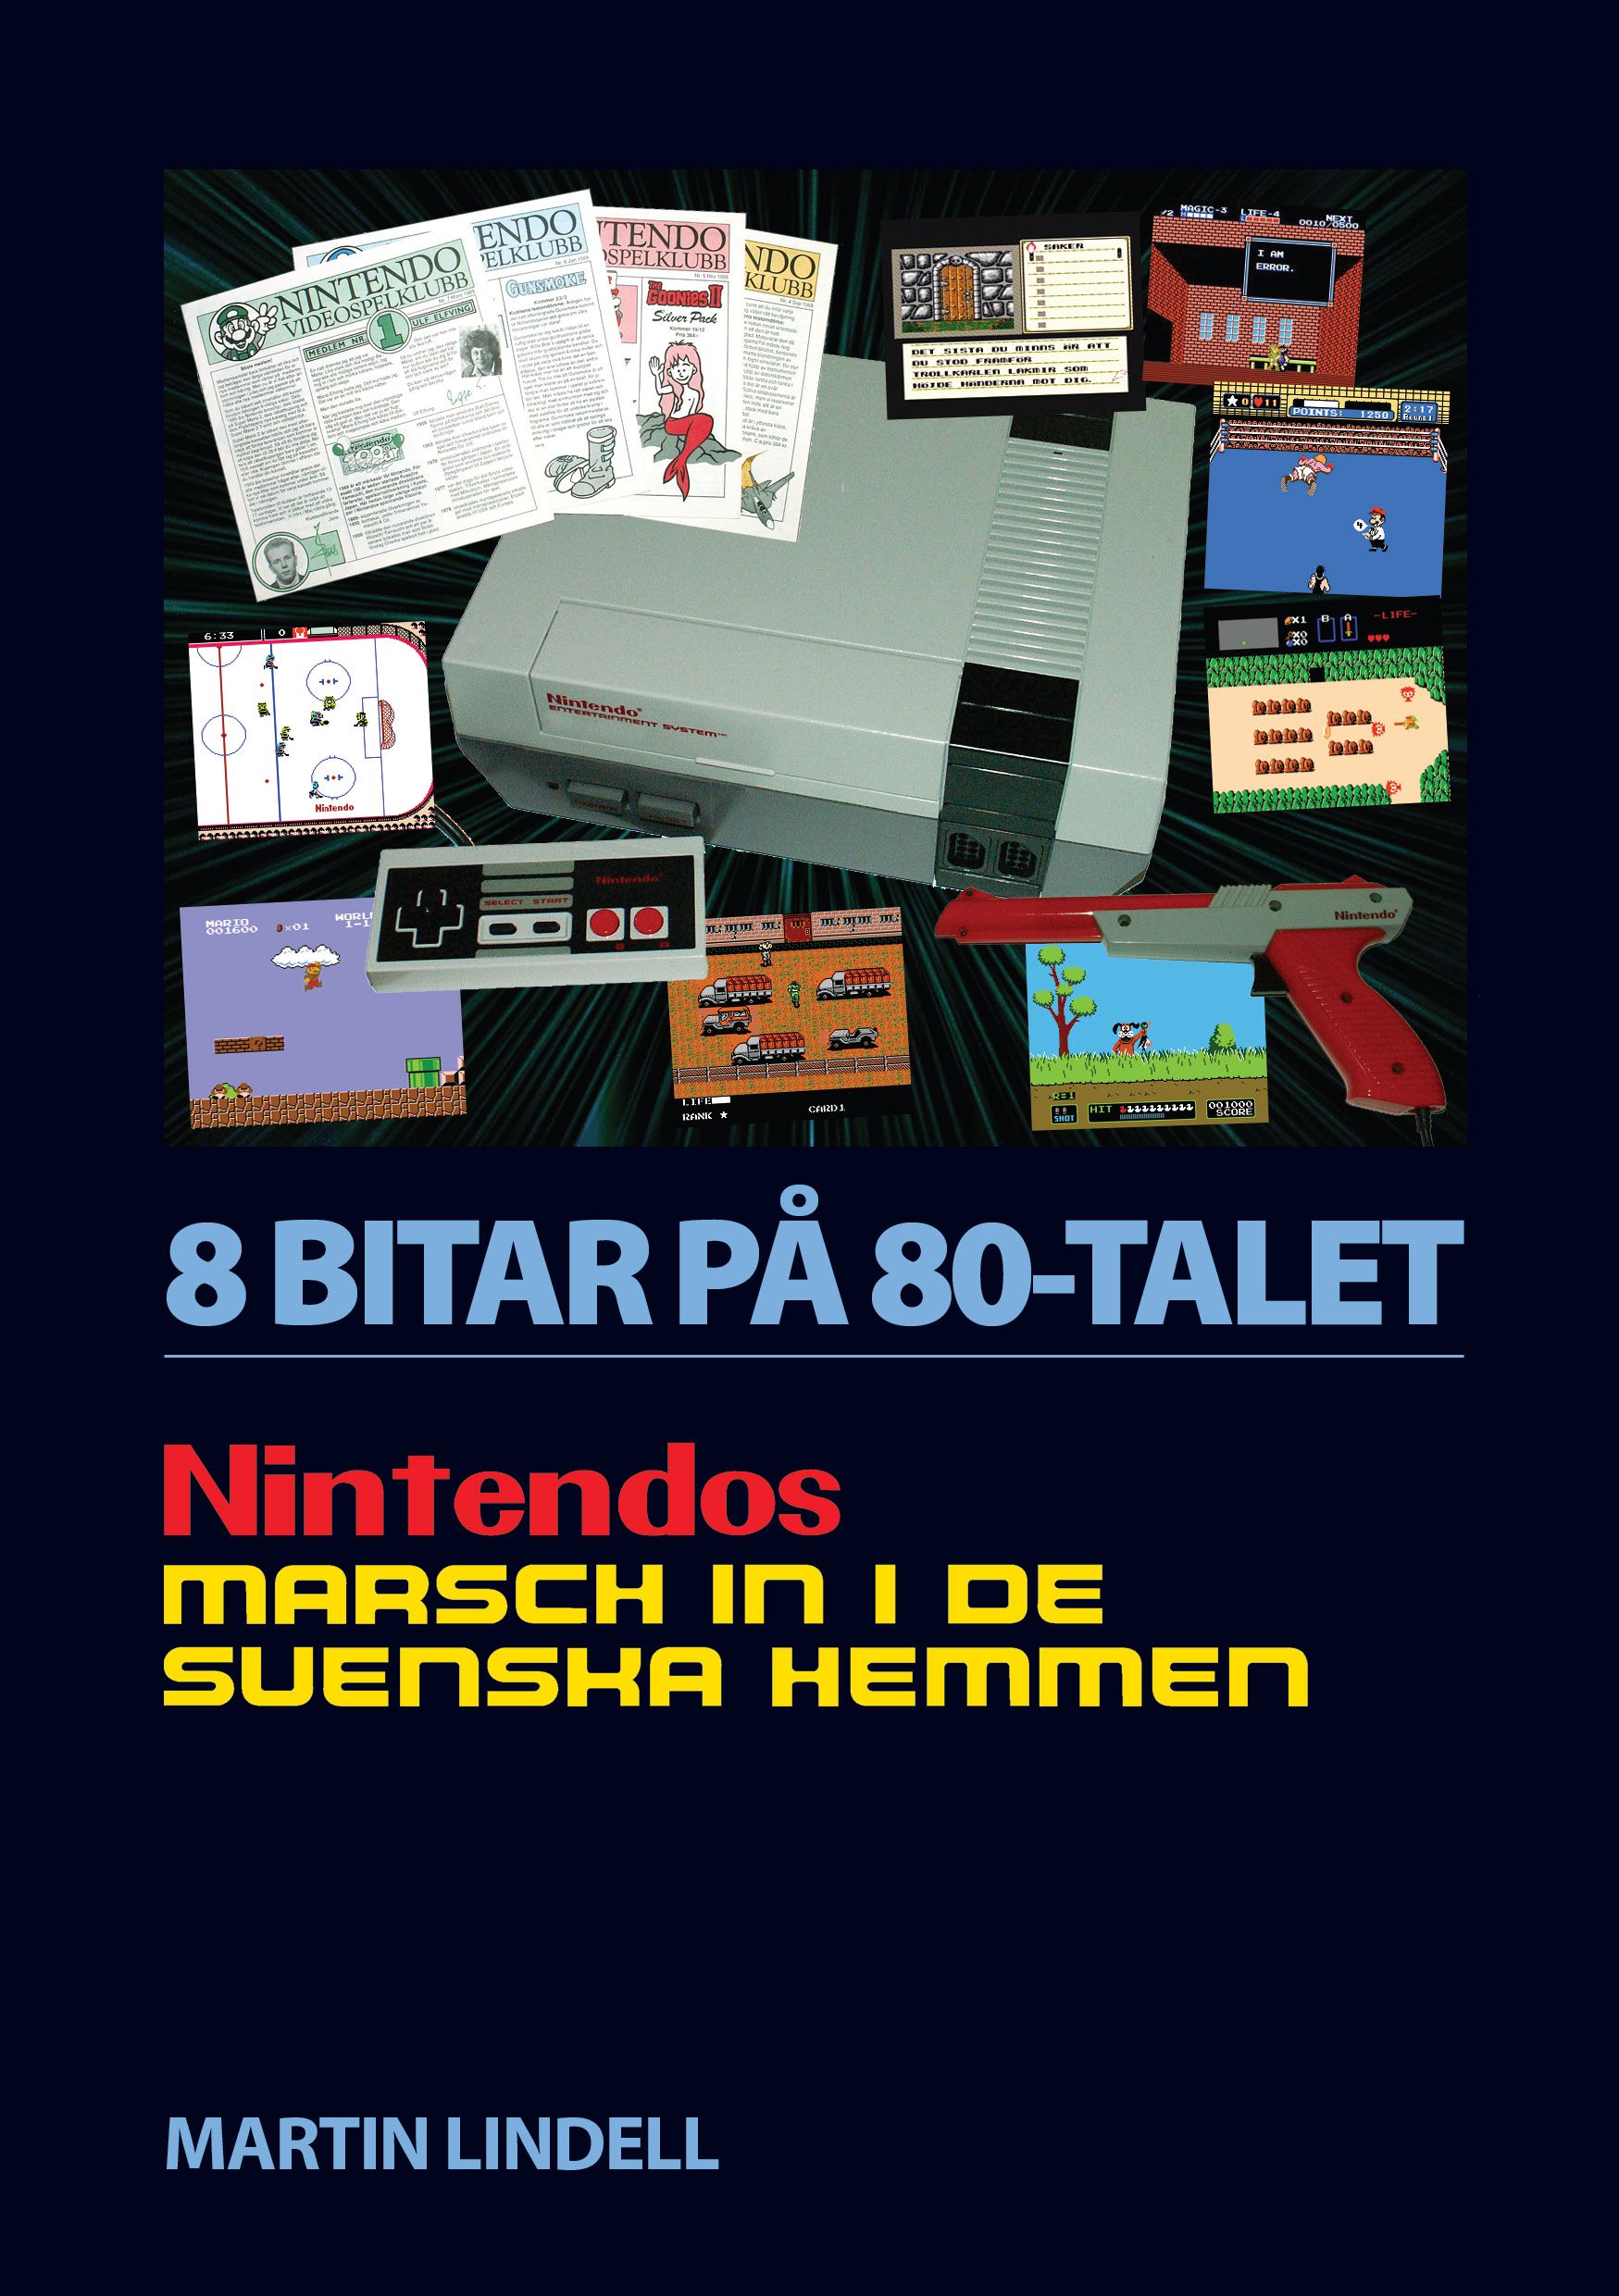 8 BITAR PÅ 80-TALET: NINTENDOS MARSCH IN I DE SVENSKA HEMMEN, e-bok av Martin Lindell